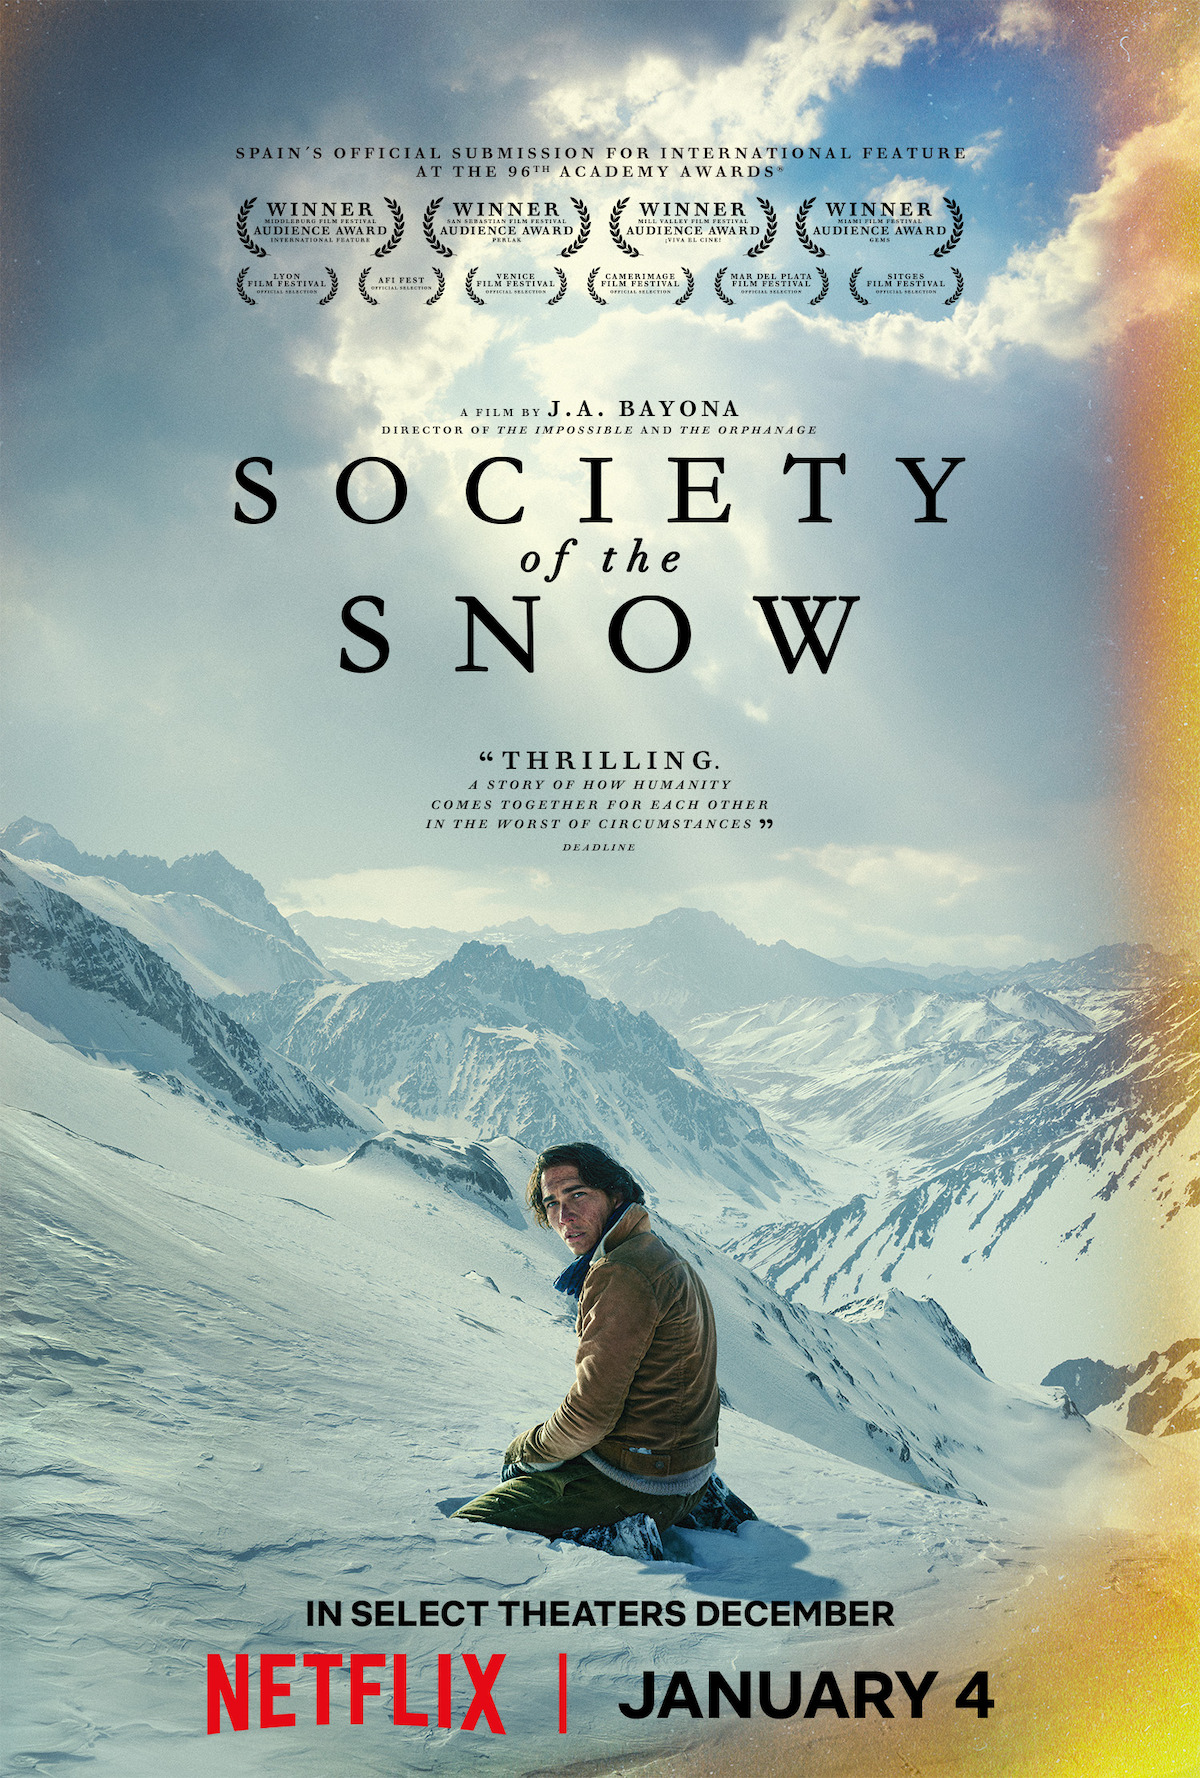 Le location del film La società della neve